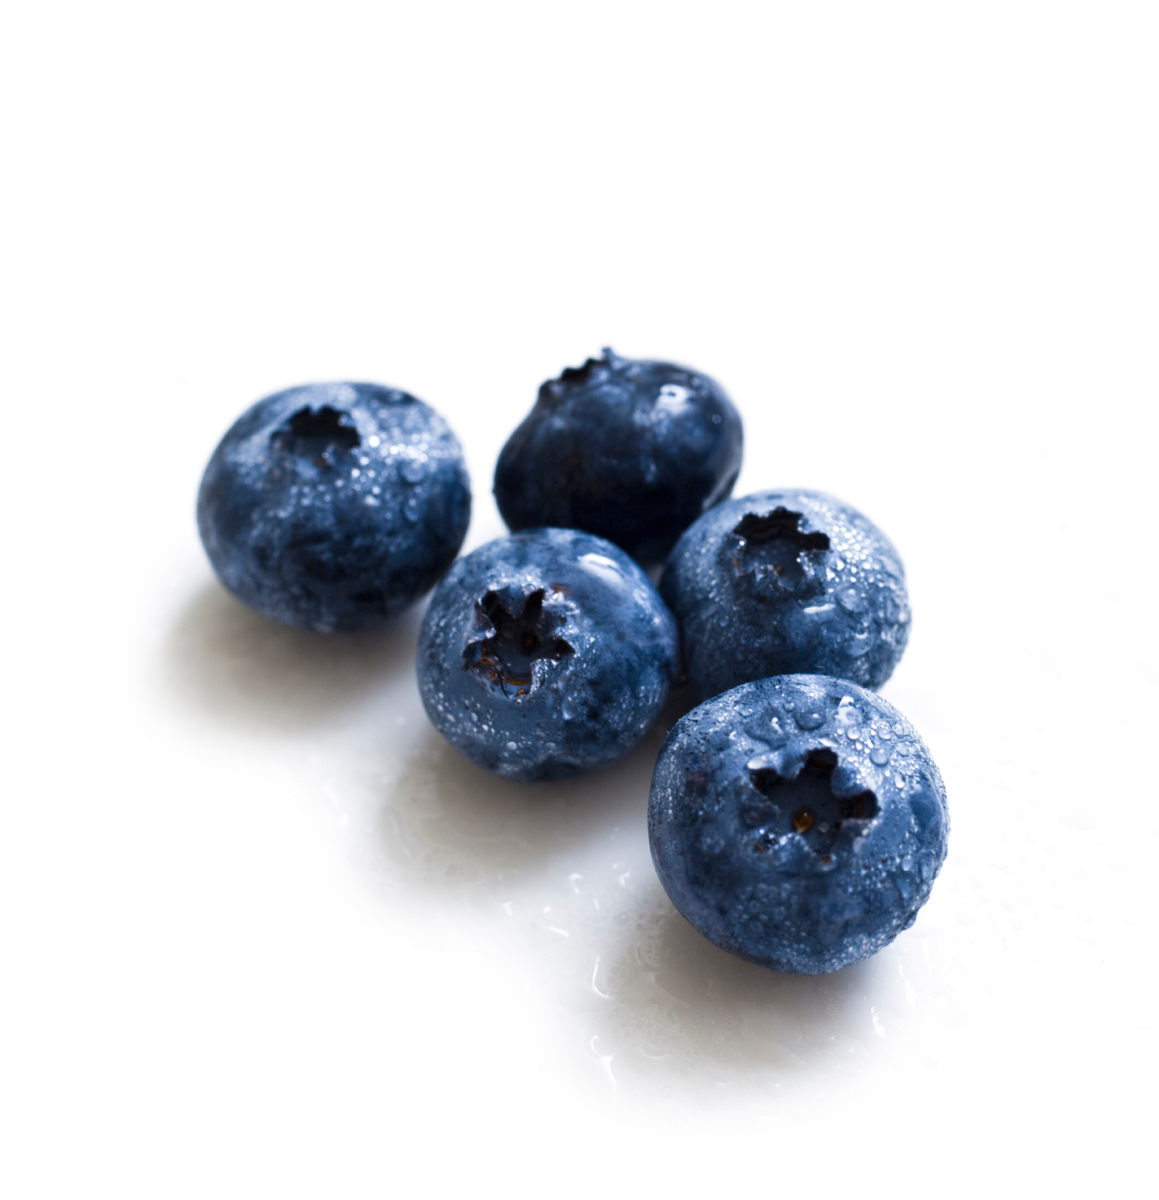 Produce- Frutis- Bluebrries